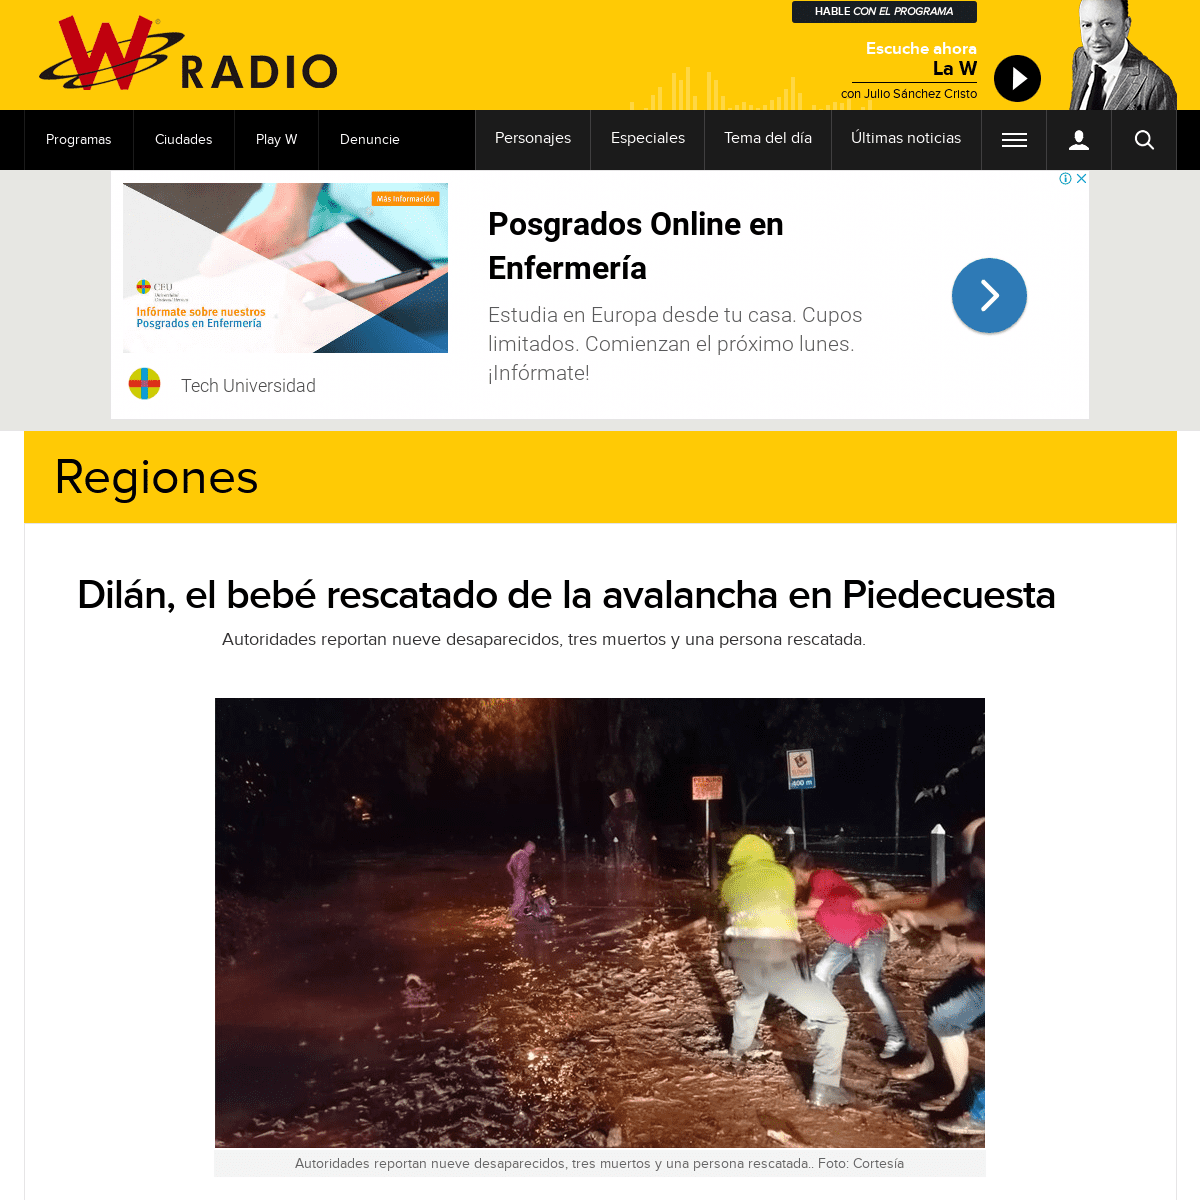 A complete backup of www.wradio.com.co/noticias/regionales/dilan-el-bebe-rescatado-de-la-avalancha-en-piedecuesta/20200226/nota/